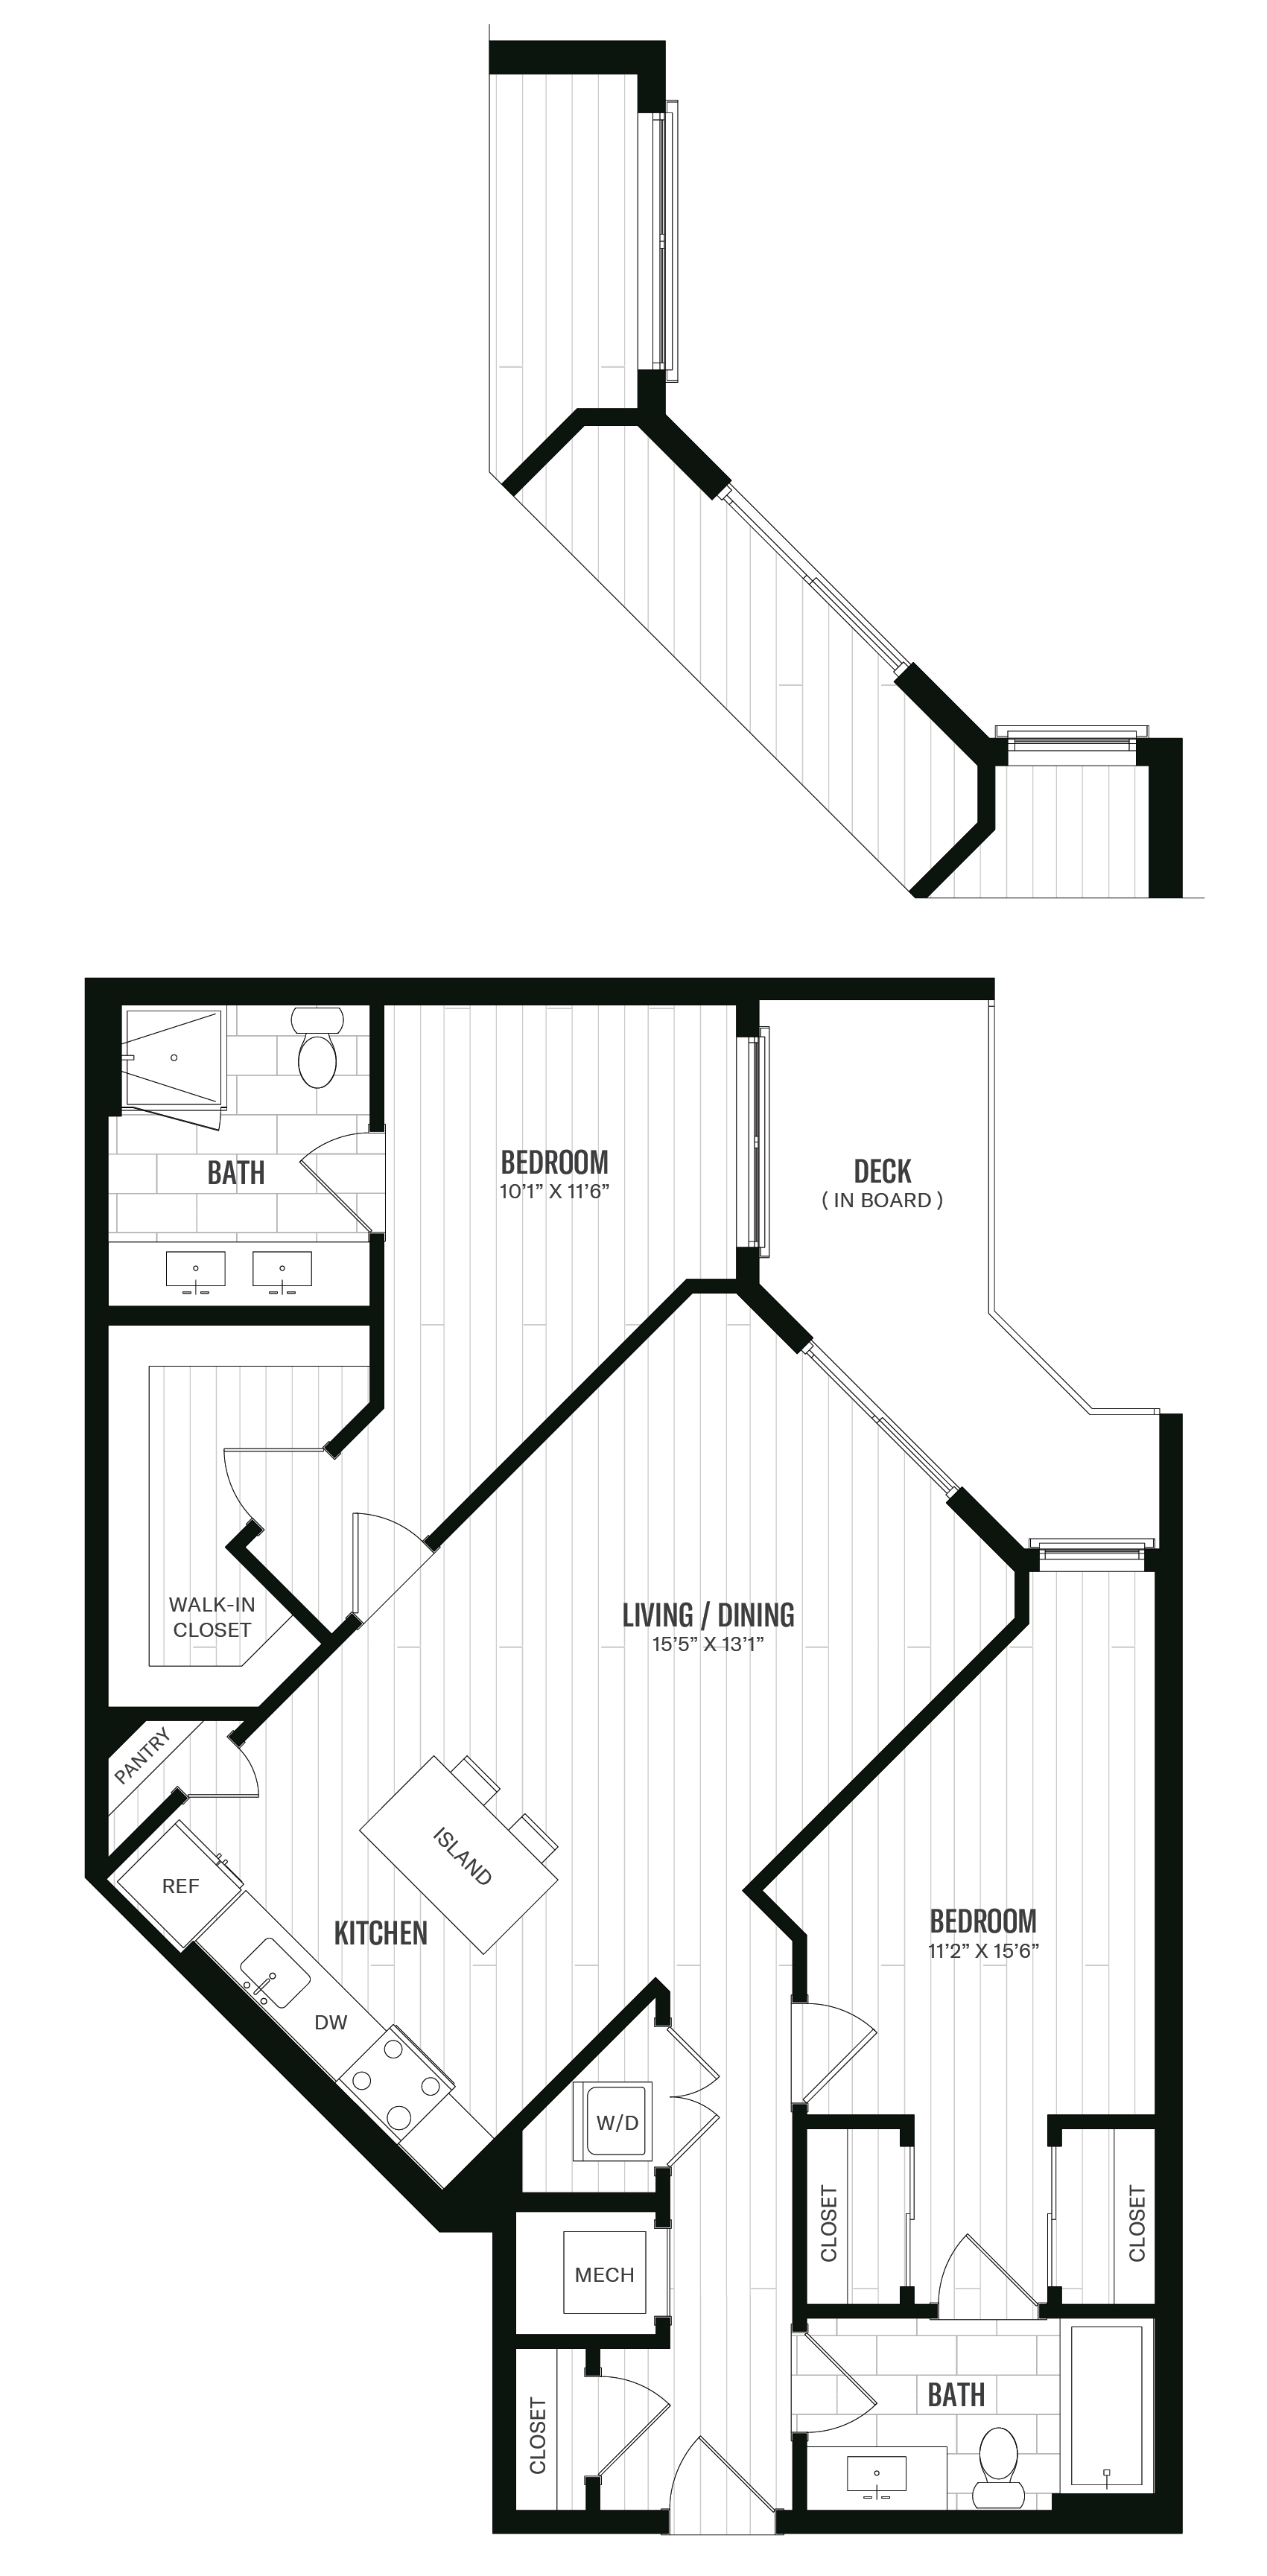 Floorplan image of unit 503